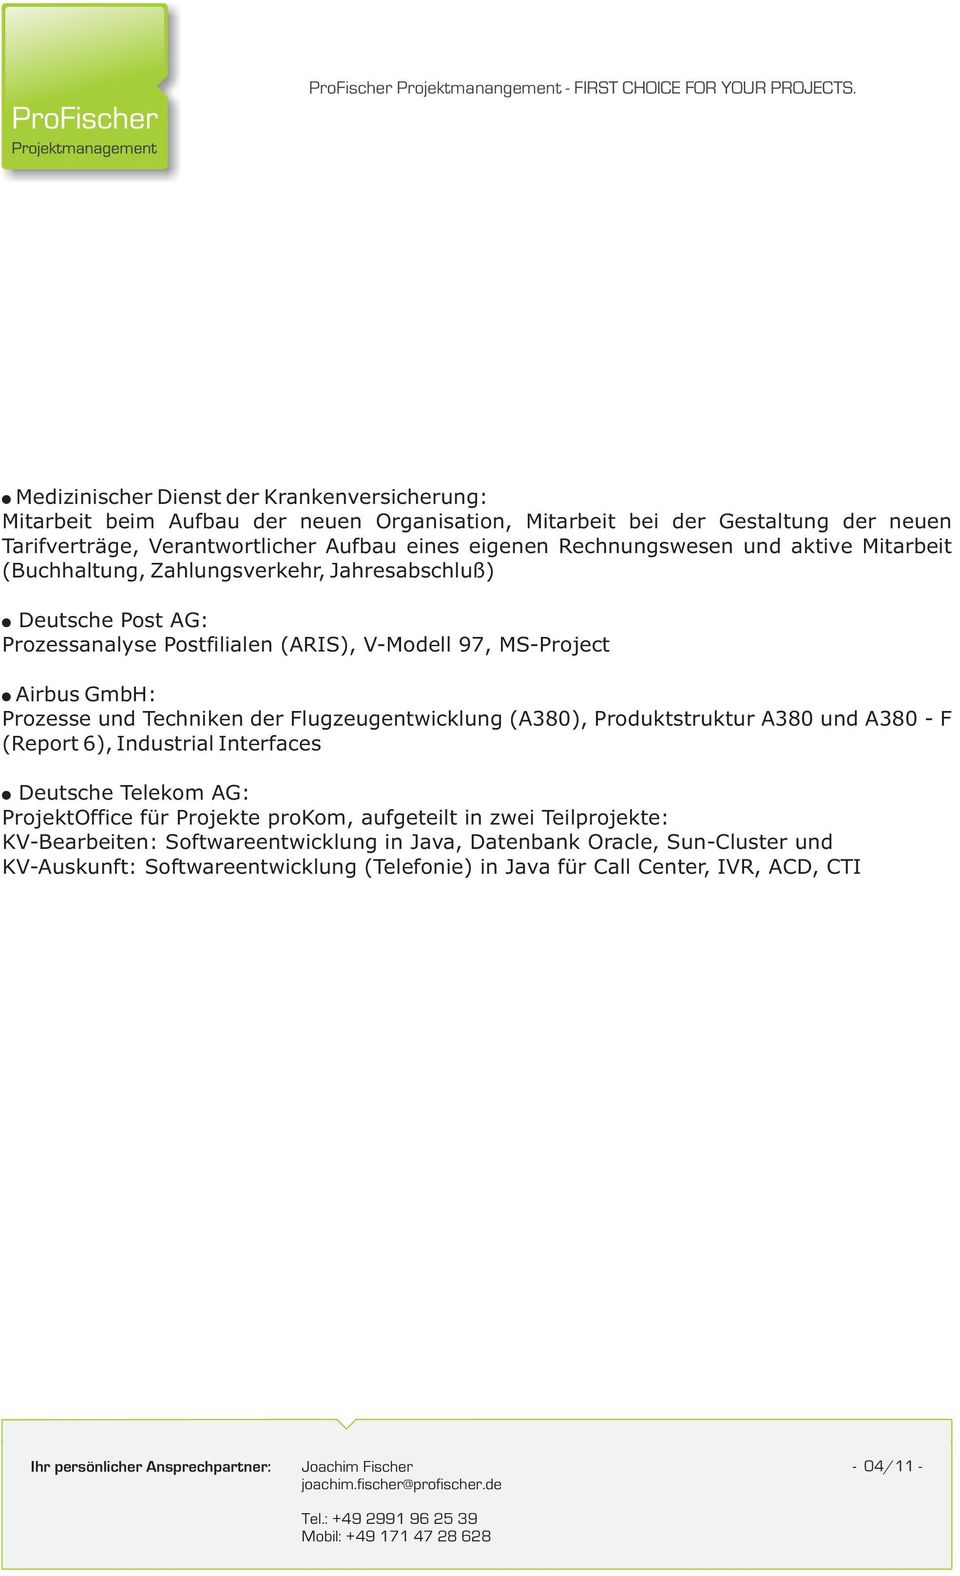 und Techniken der Flugzeugentwicklung (A380), Produktstruktur A380 und A380 - F (Report 6), Industrial Interfaces Deutsche Telekom AG: ProjektOffice für Projekte prokom, aufgeteilt in